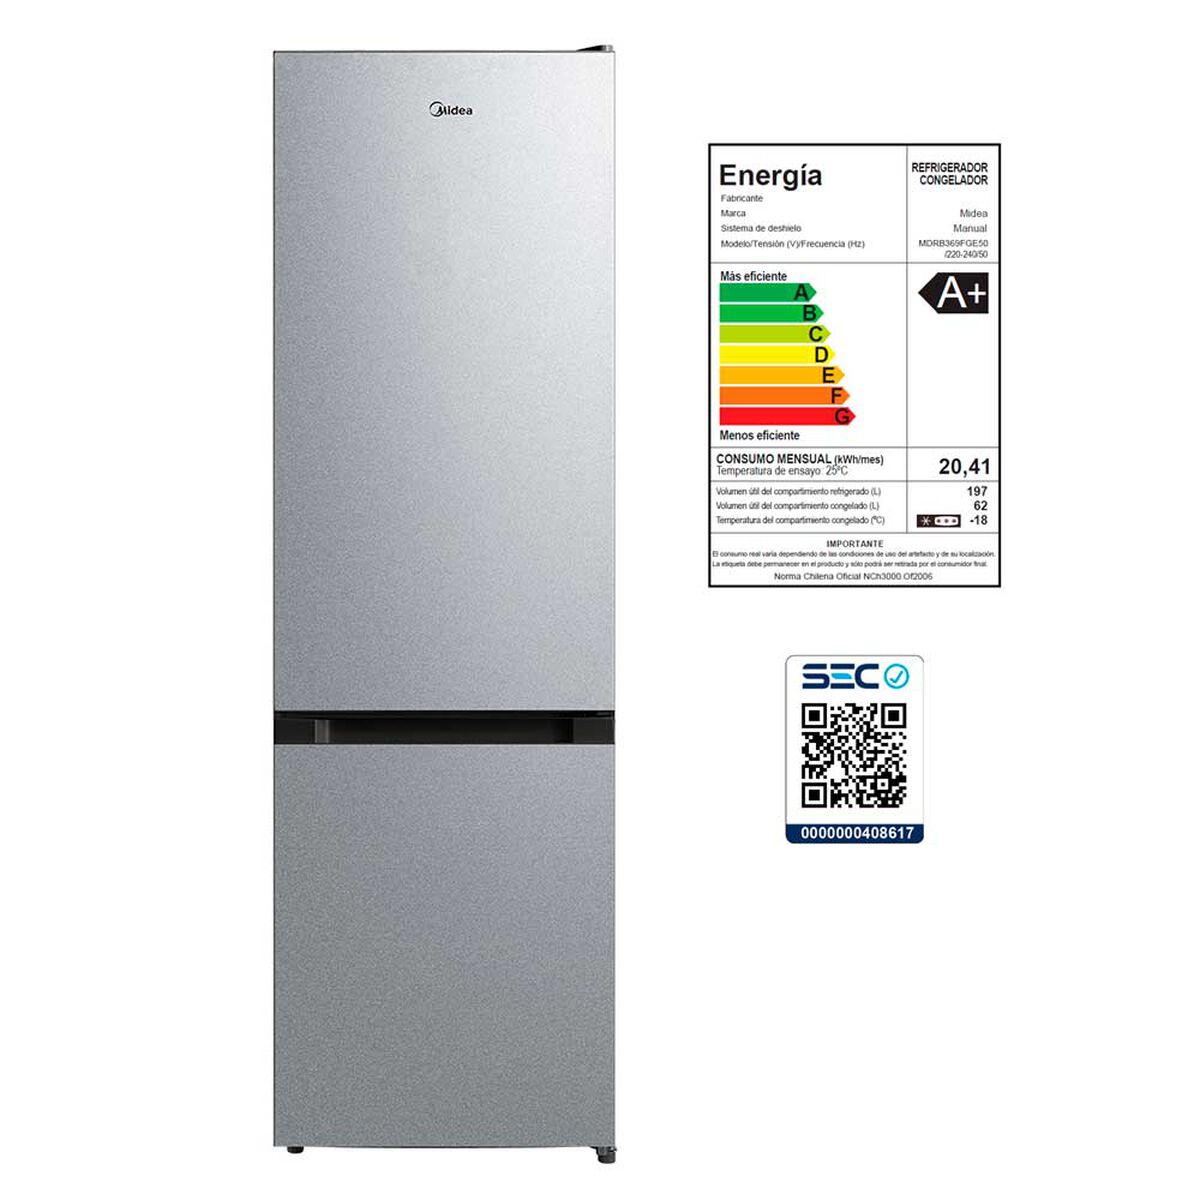 Refrigerador Frío Directo Midea MDRB369FGE50 259 lts.